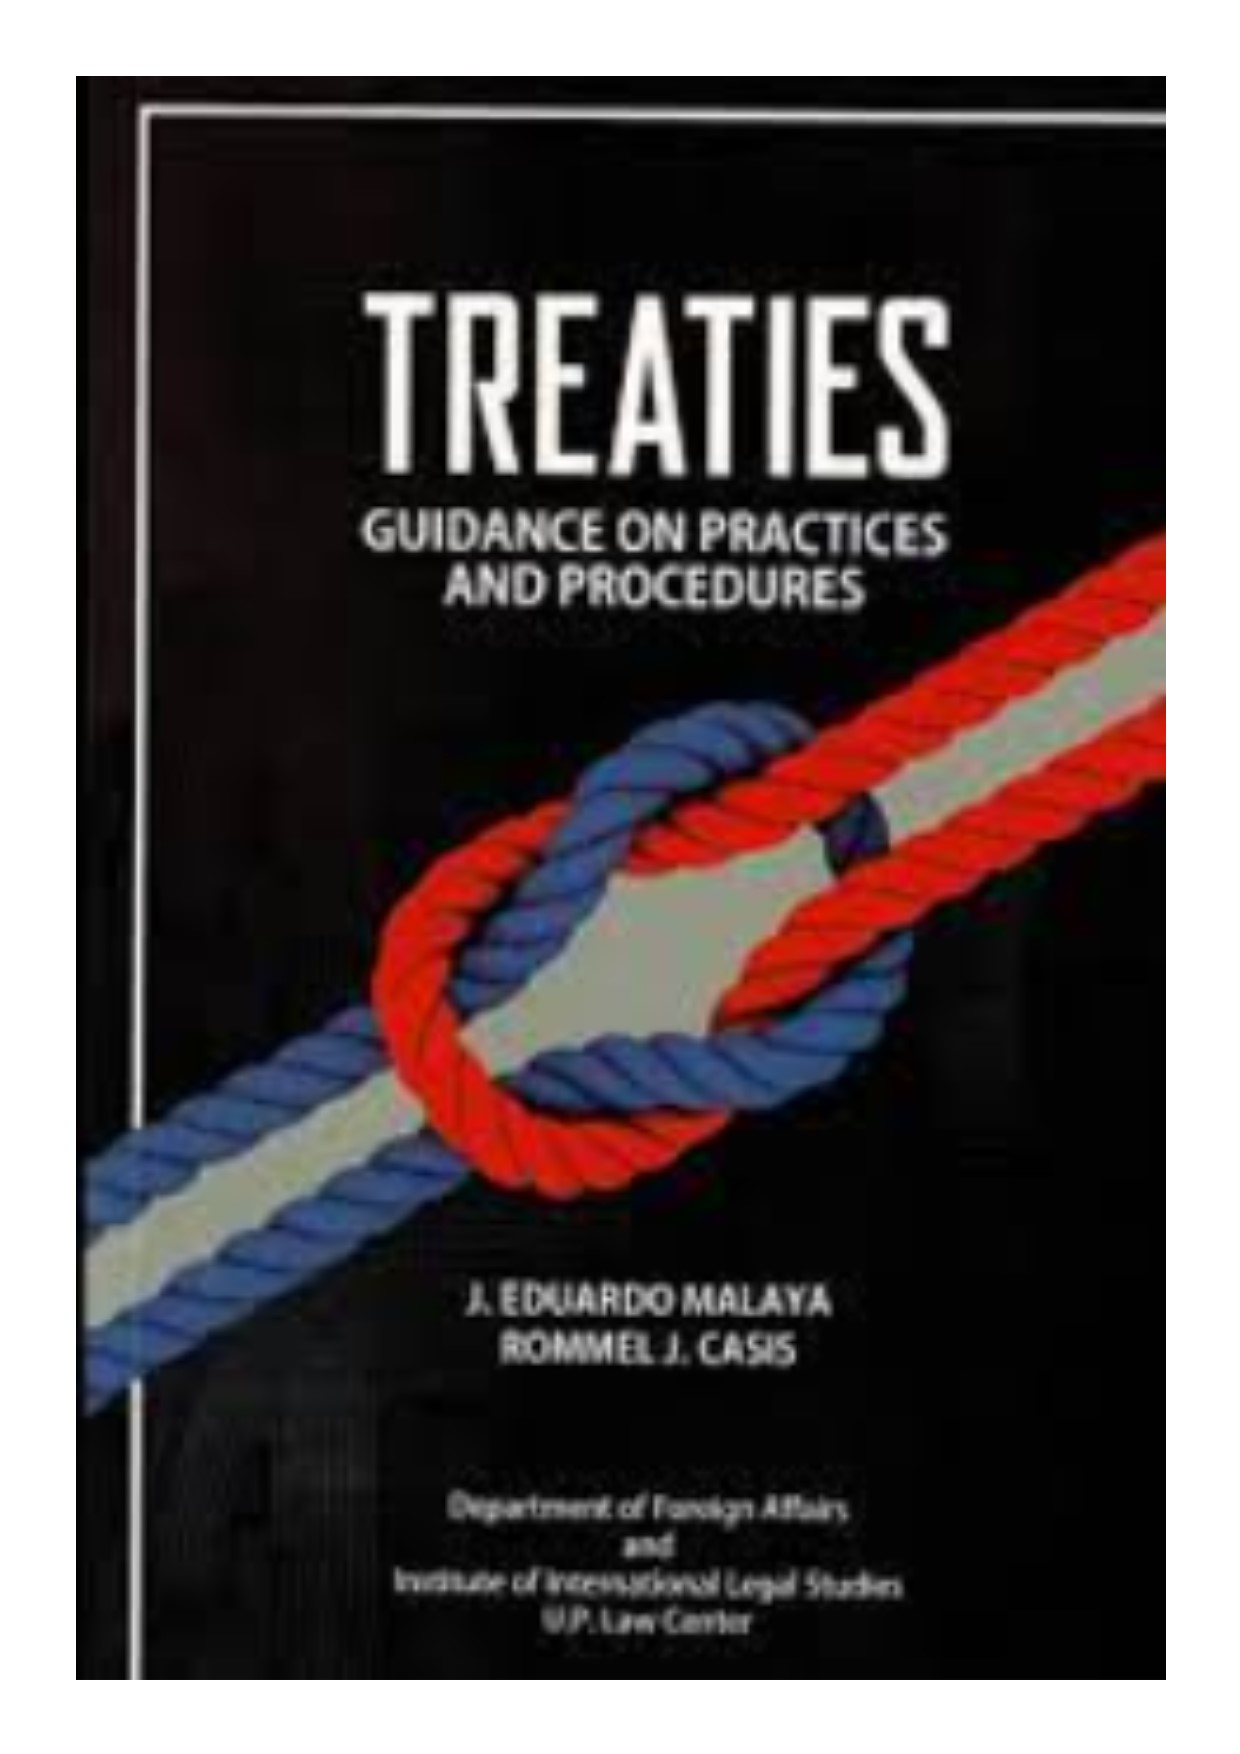 Treaties guidance on practices and procedures